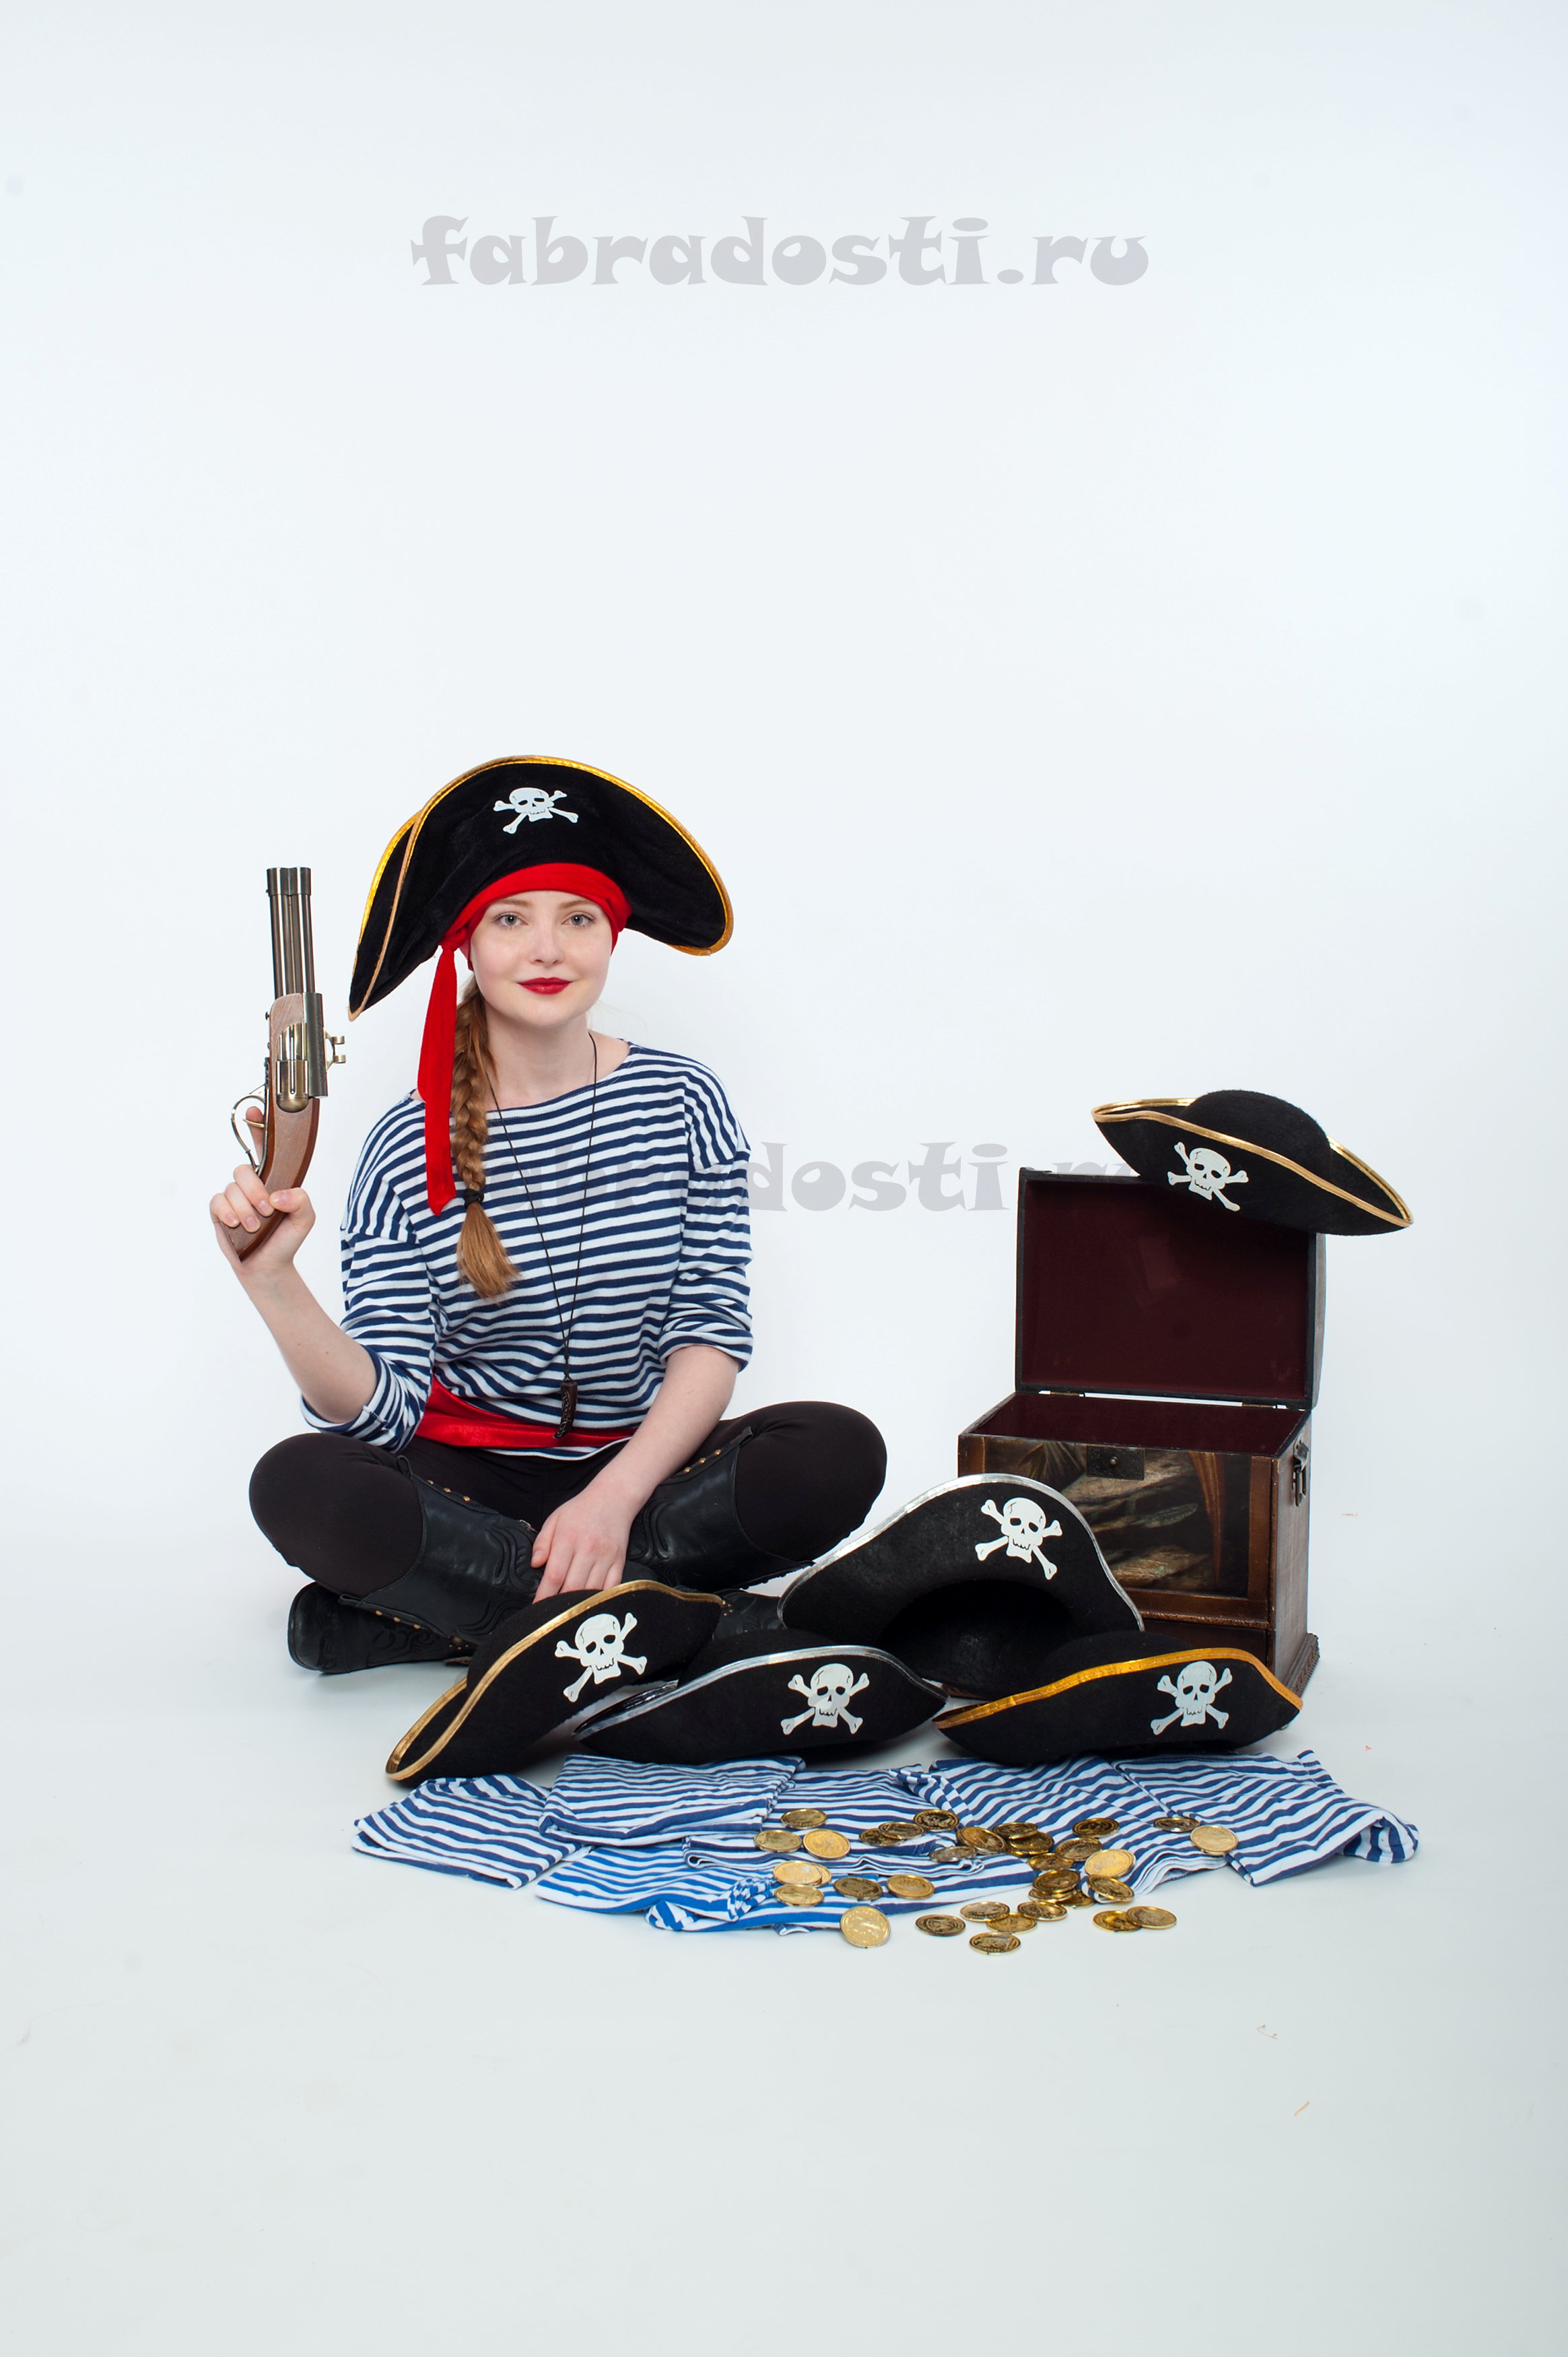 пират